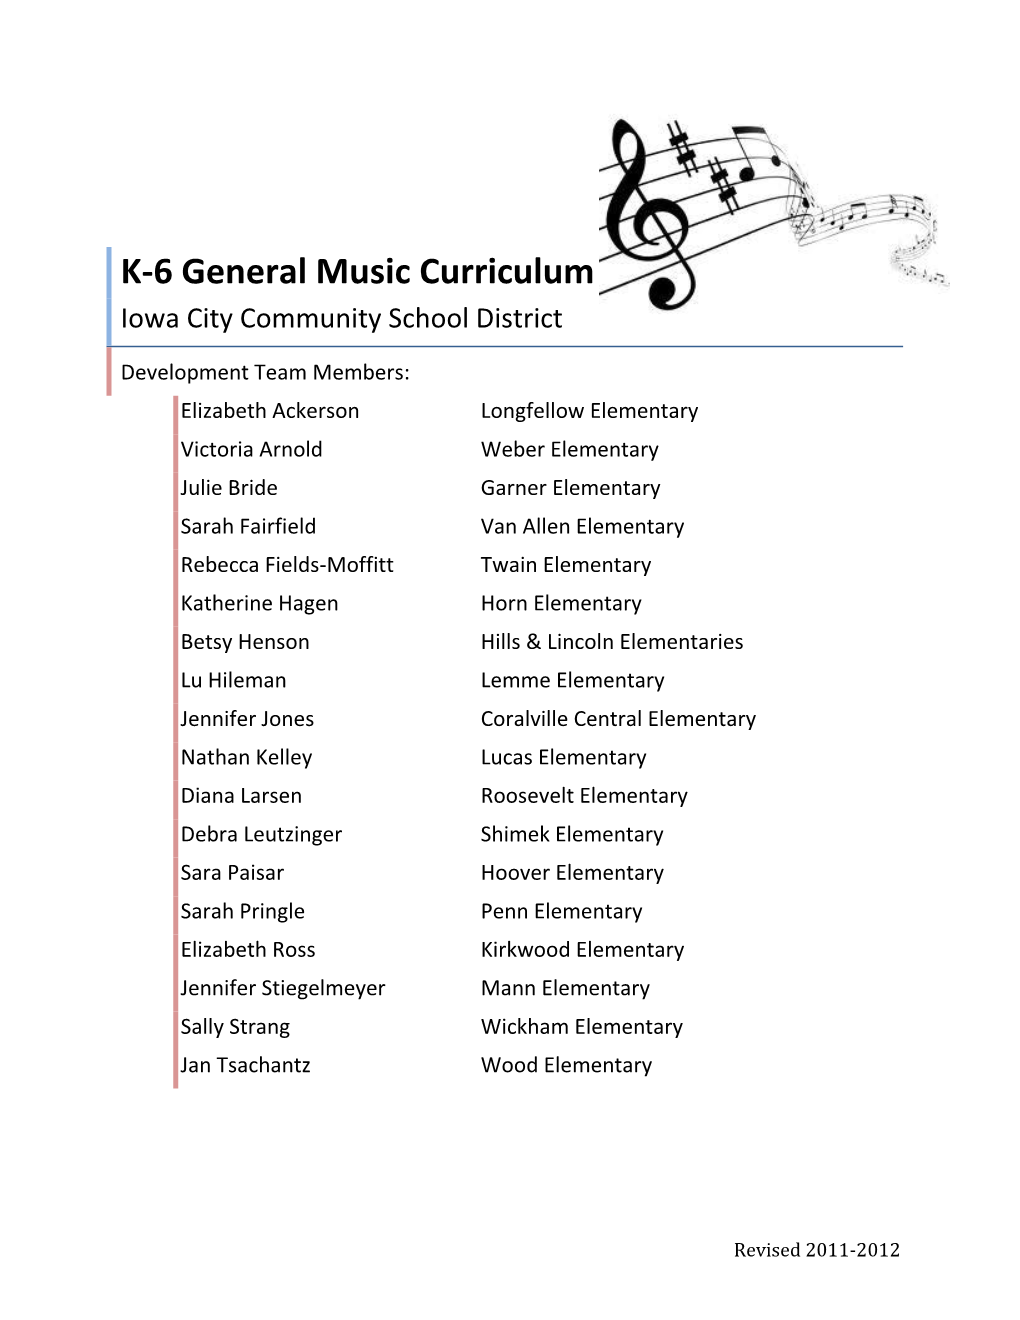 ICCSD General Music Curriculum 2012